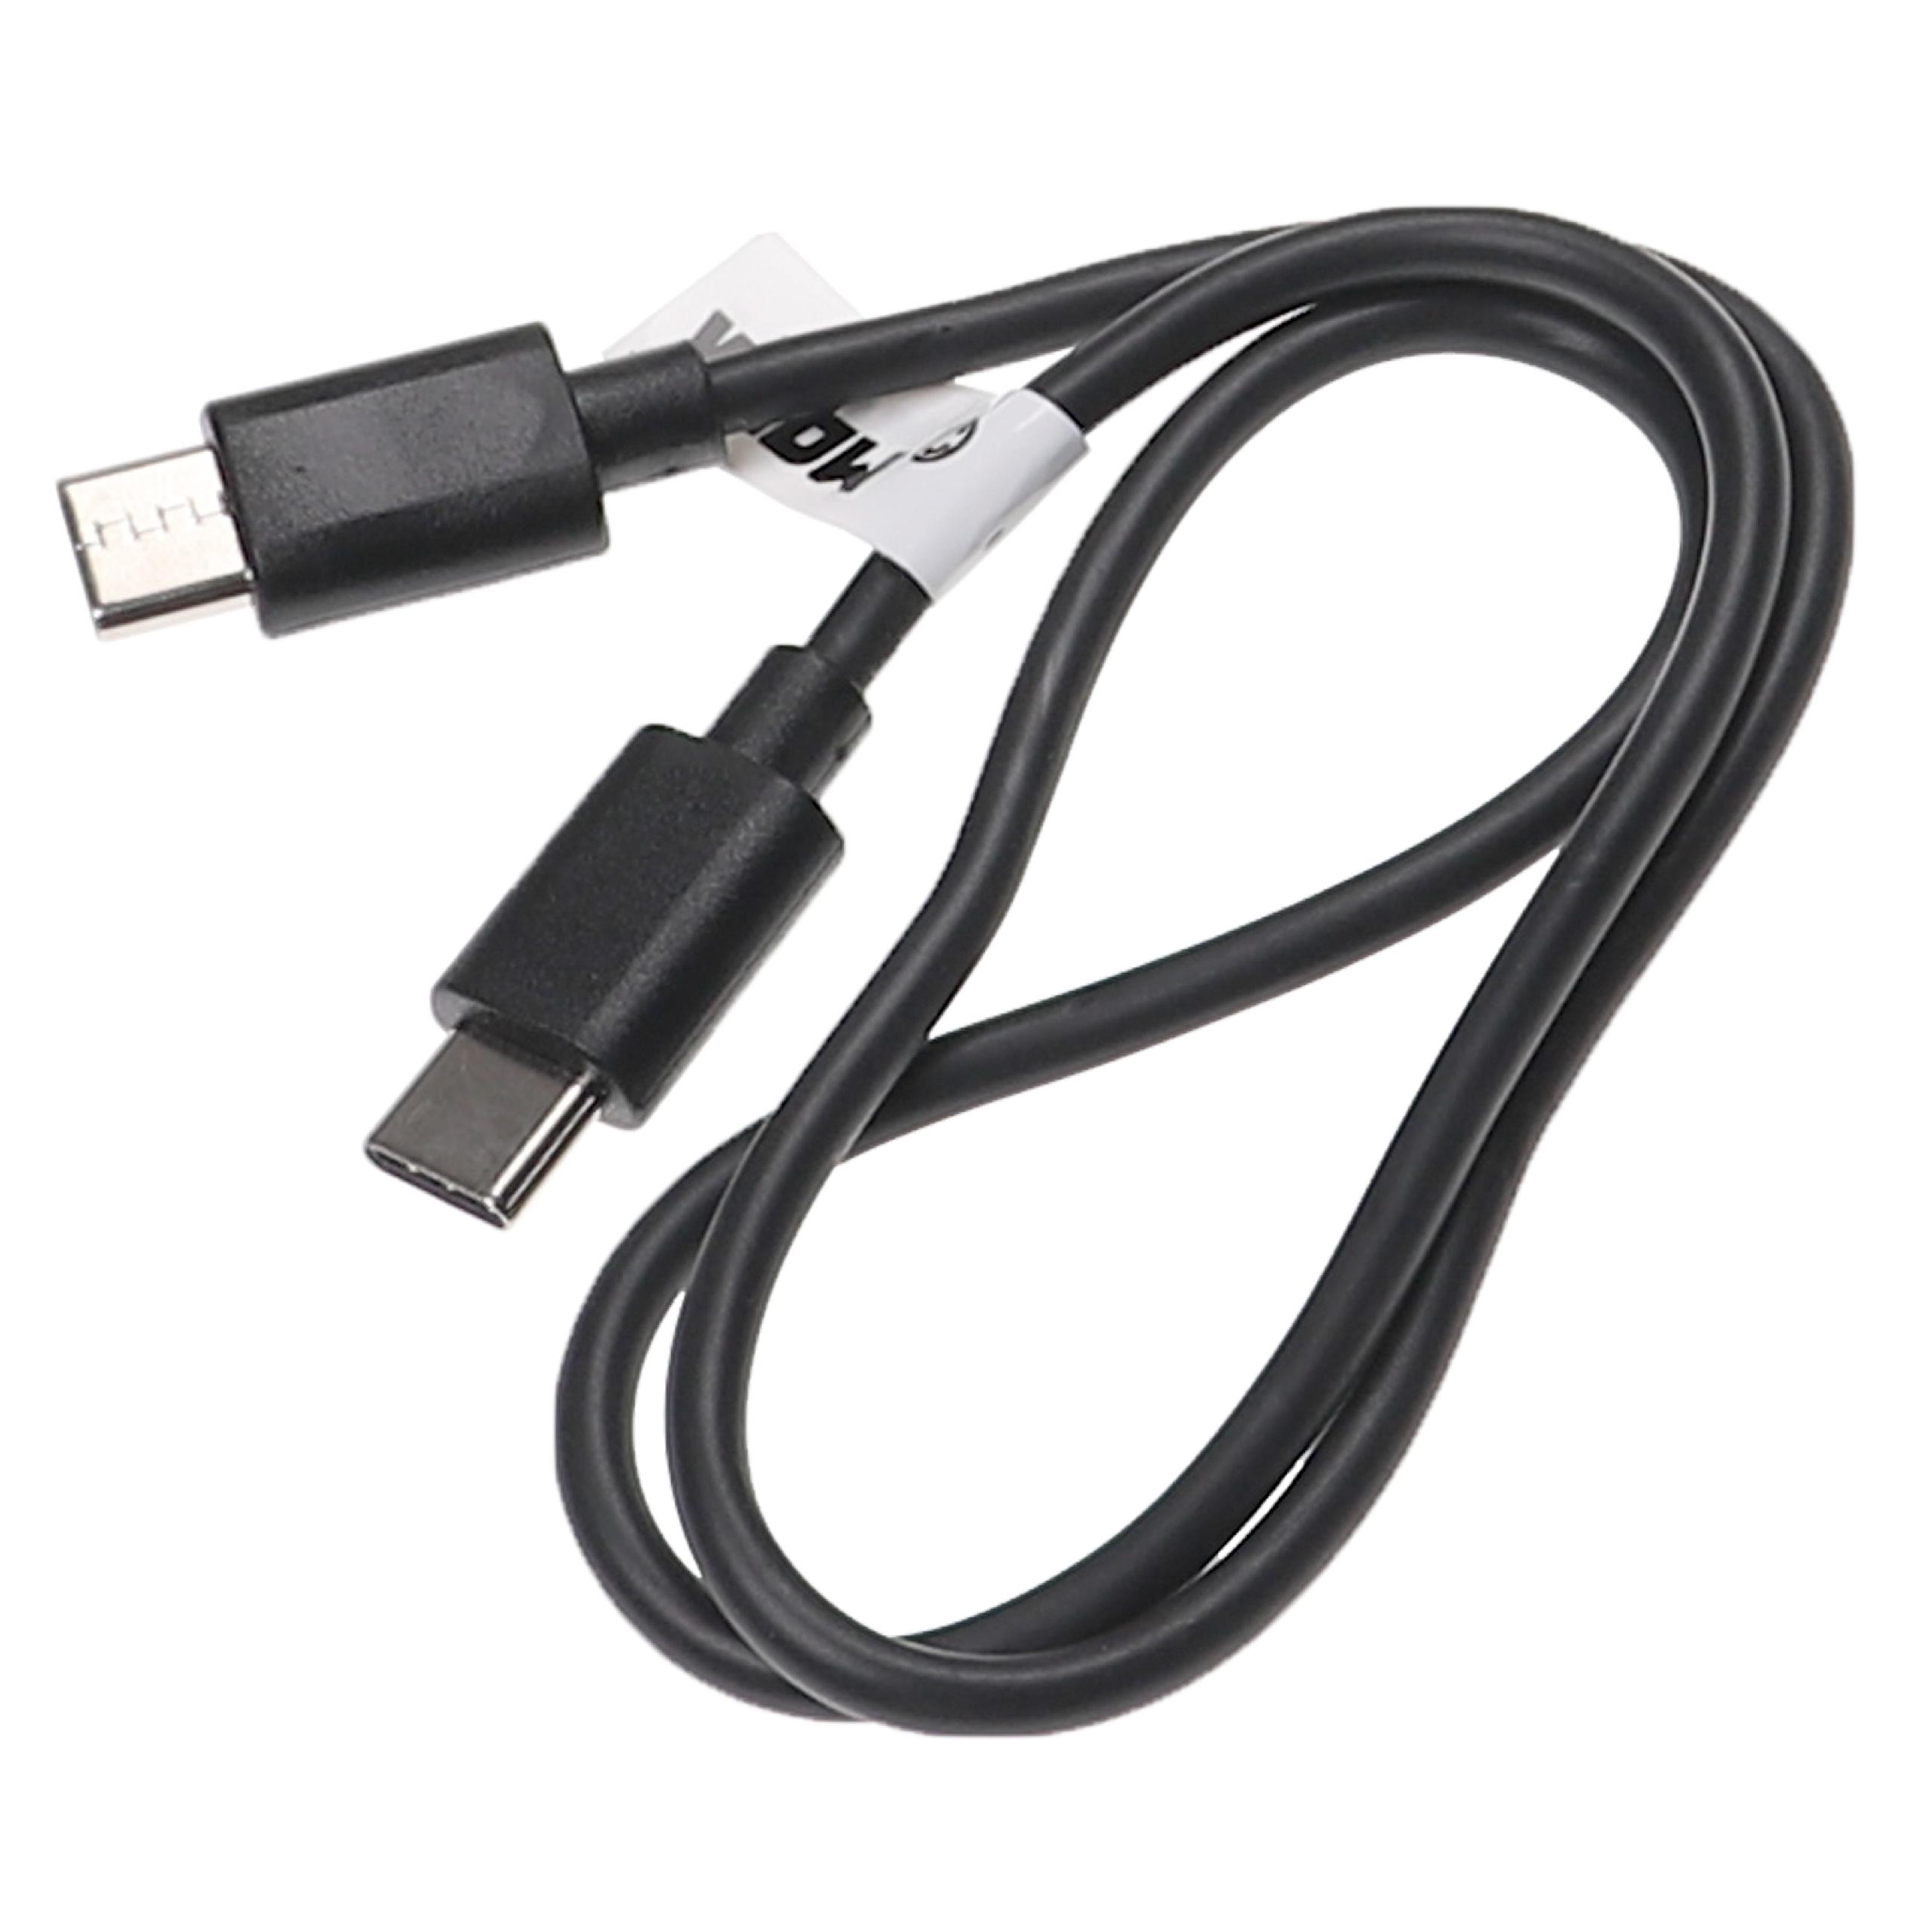 USB C Ladekabel passend für diverse Laptops, Tablets, Smartphones - USB C Kabel 50 cm Schwarz